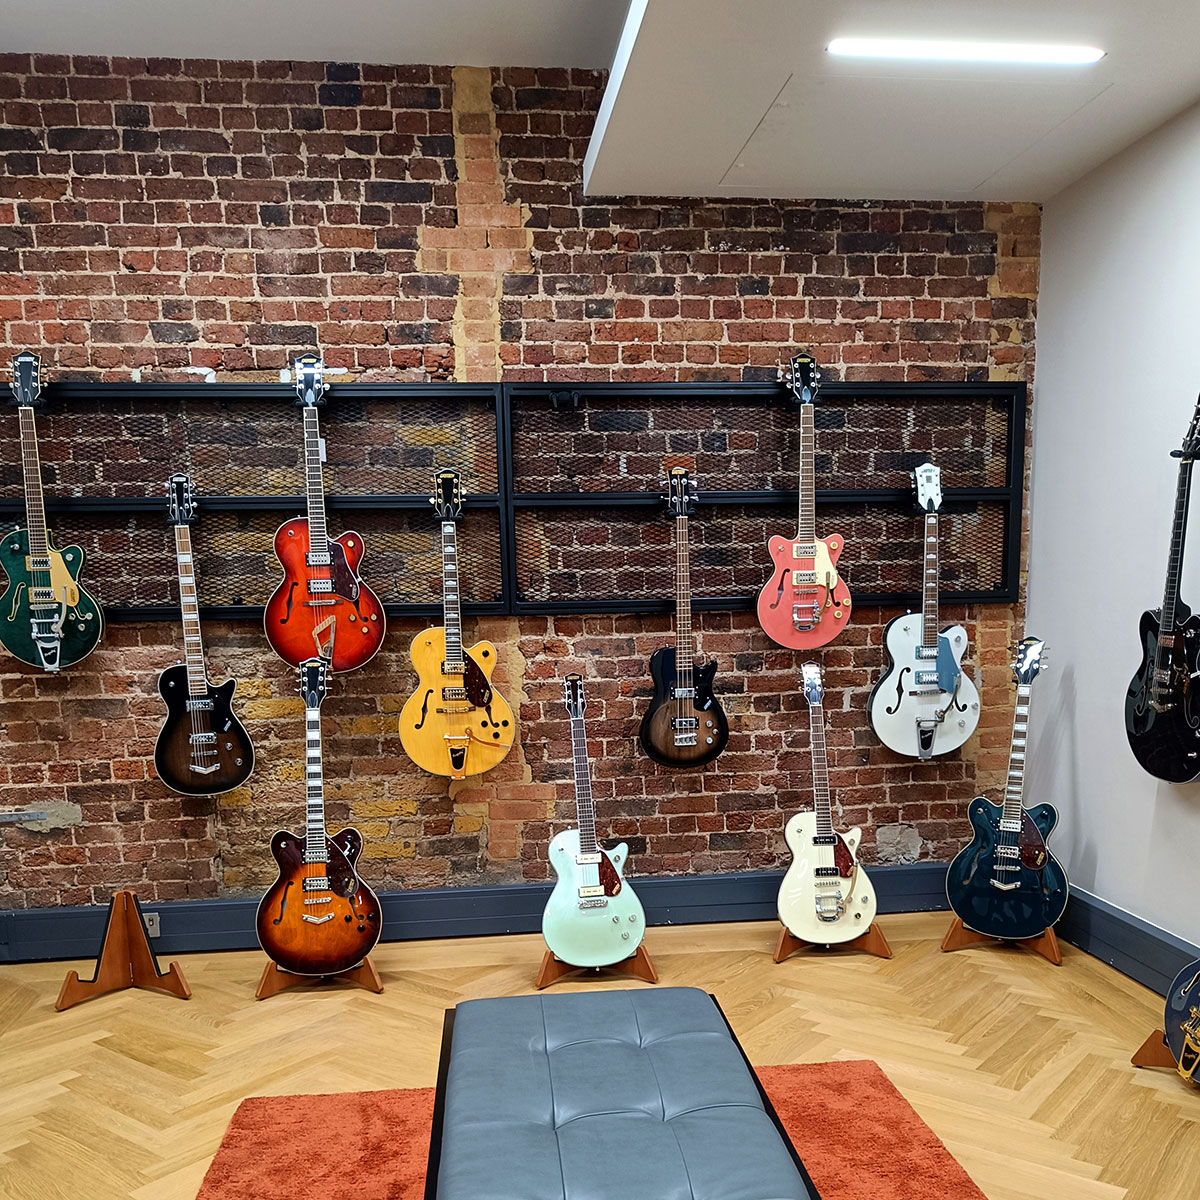 Raum mit vielen Gitarren der Marke Gretsch